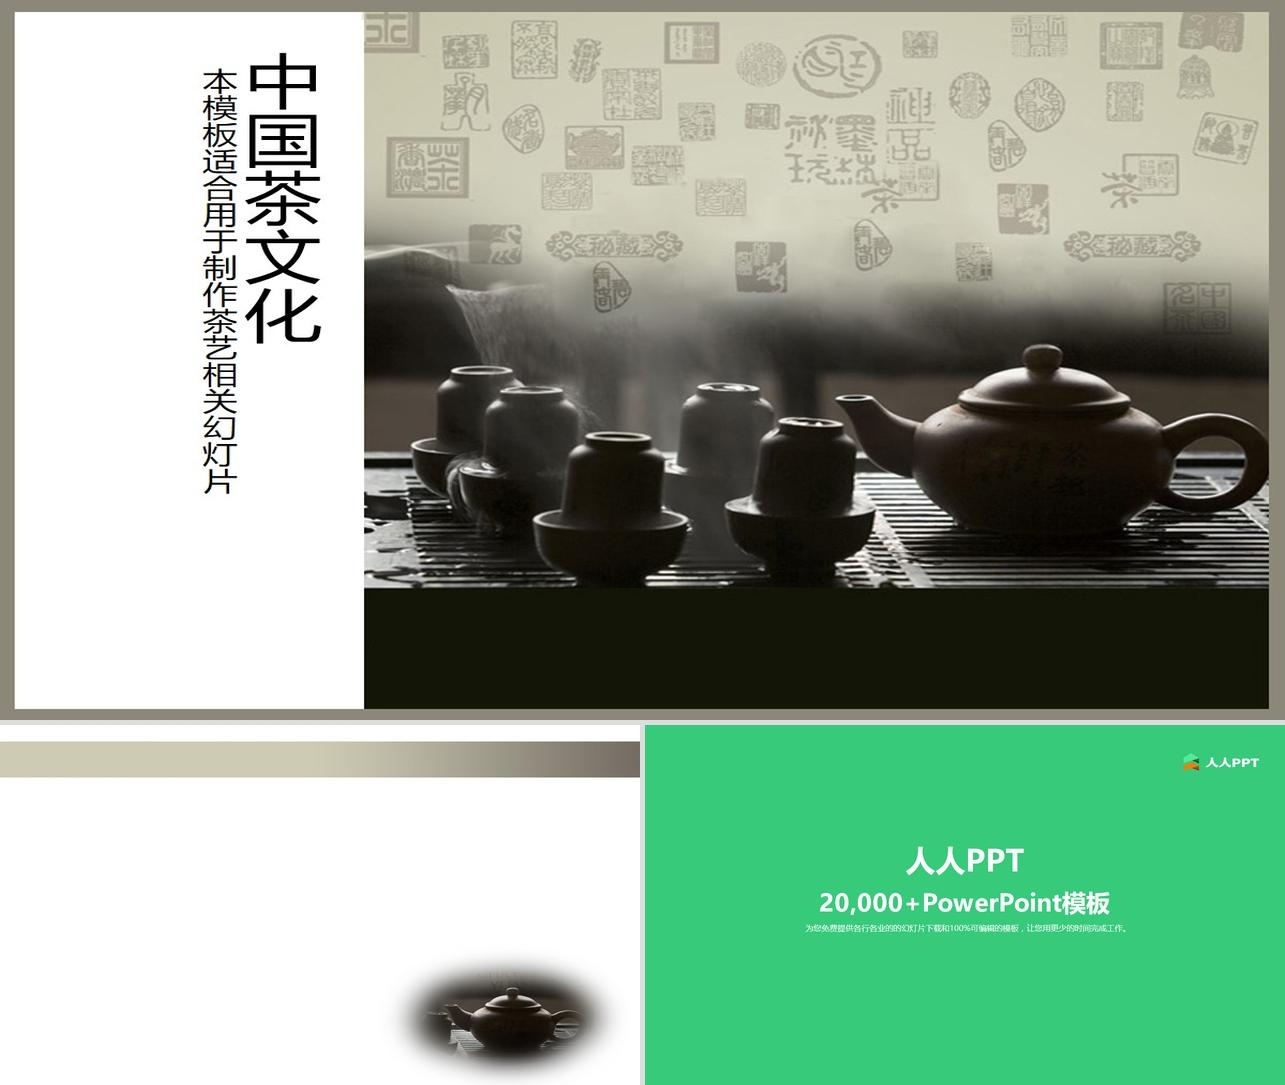 紫砂壶茶具背景的中国茶文化幻灯片模板长图